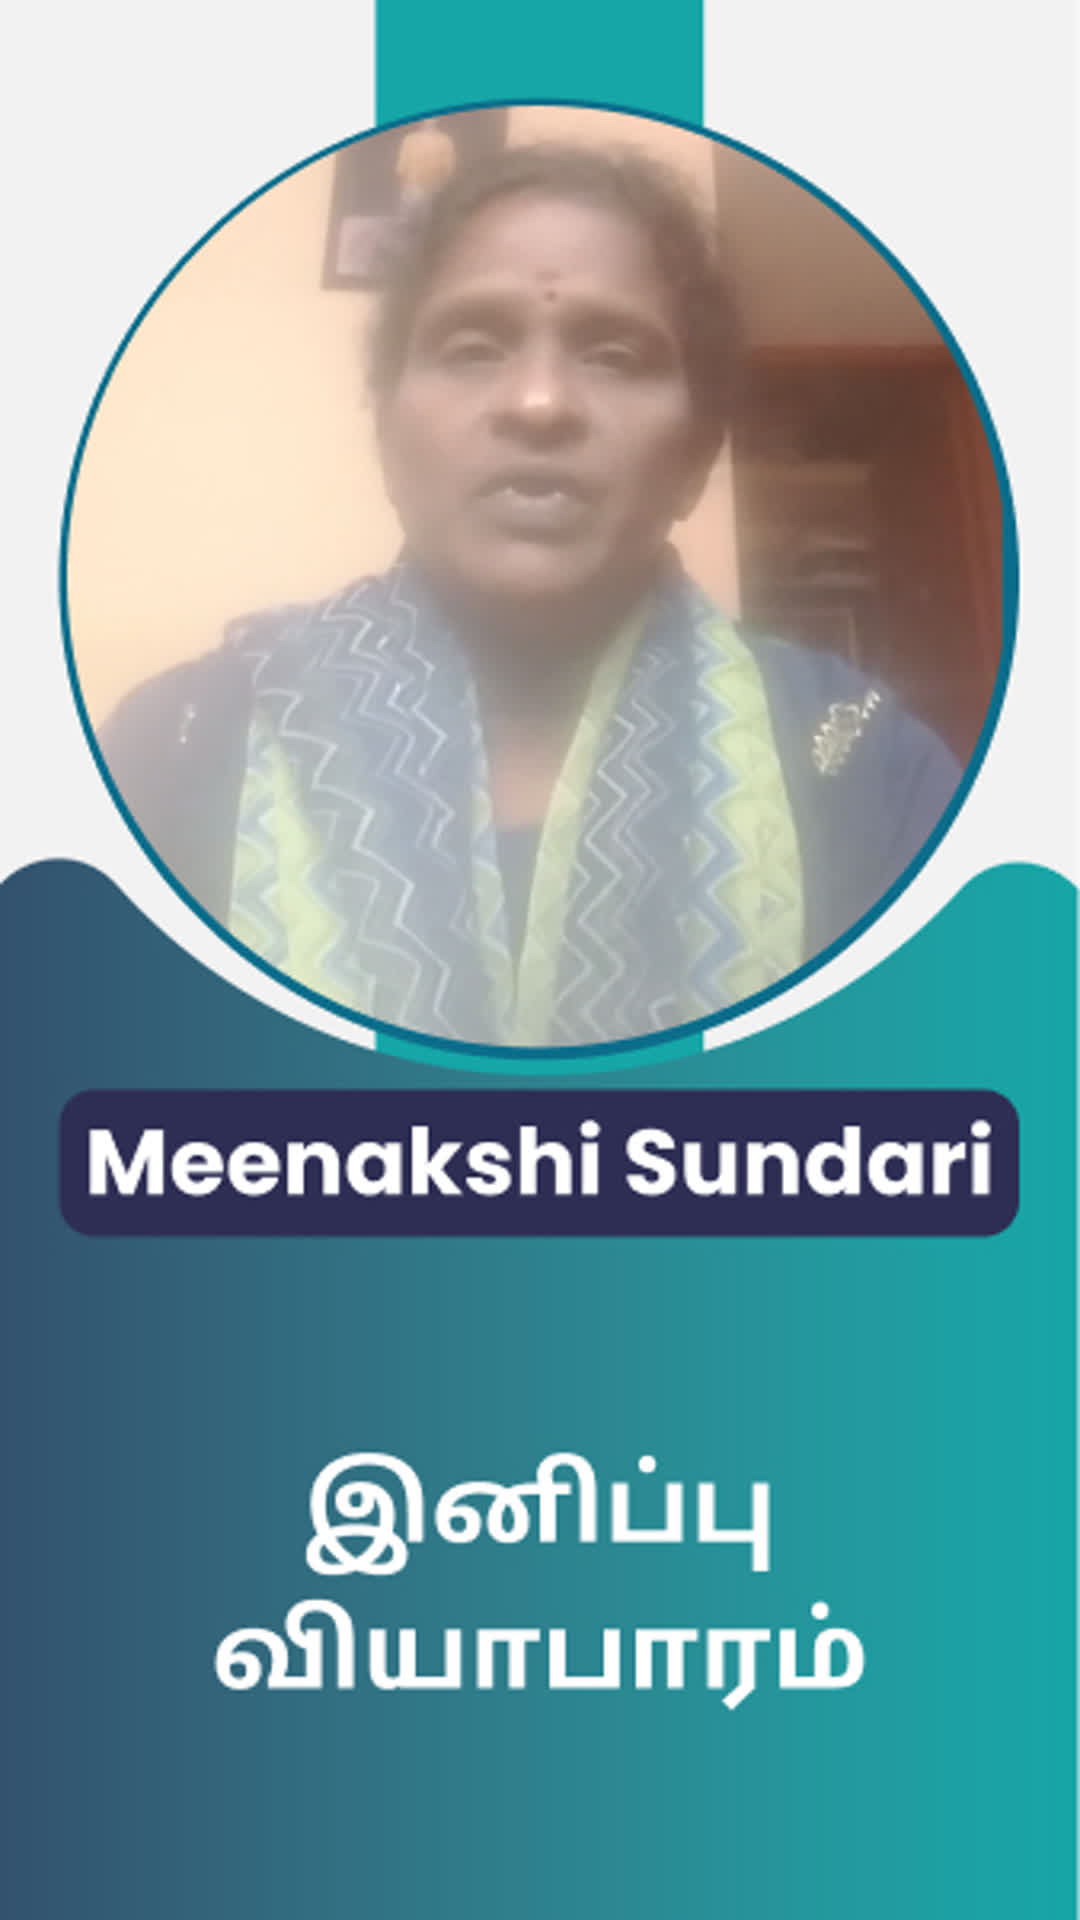 Meenakshi Sundari V's Honest Review of ffreedom app - Chennai ,Tamil Nadu